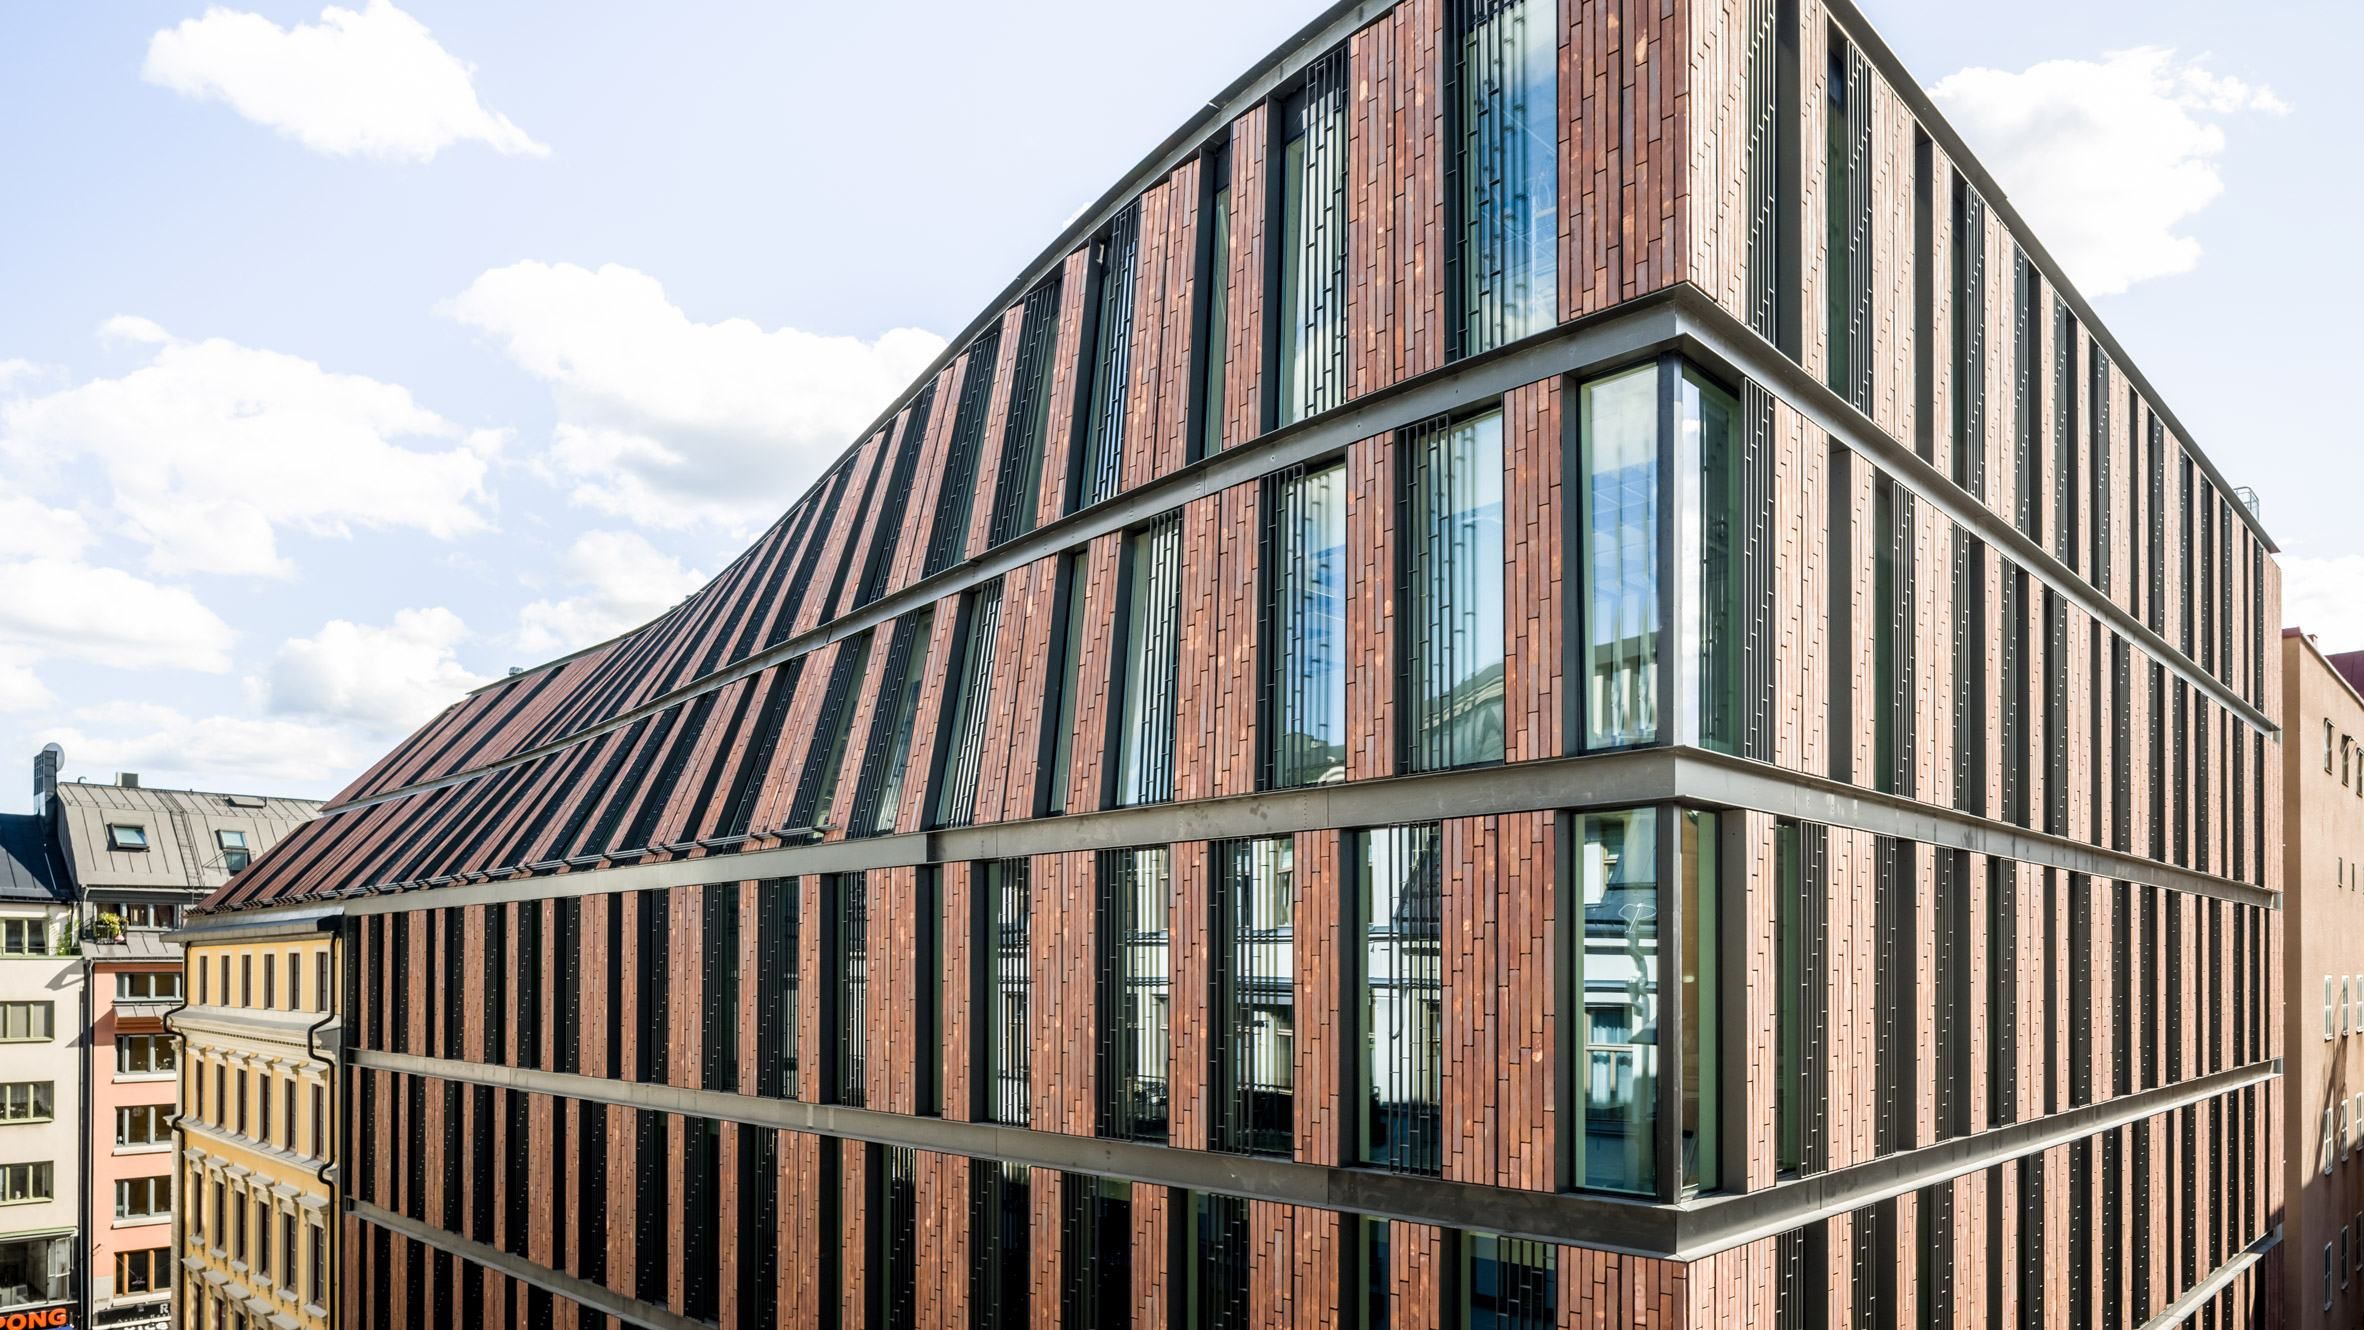 Зв'язок з історією: в Амстердамі старий будинок пов'язали з новим офісом "покрученим" фасадом